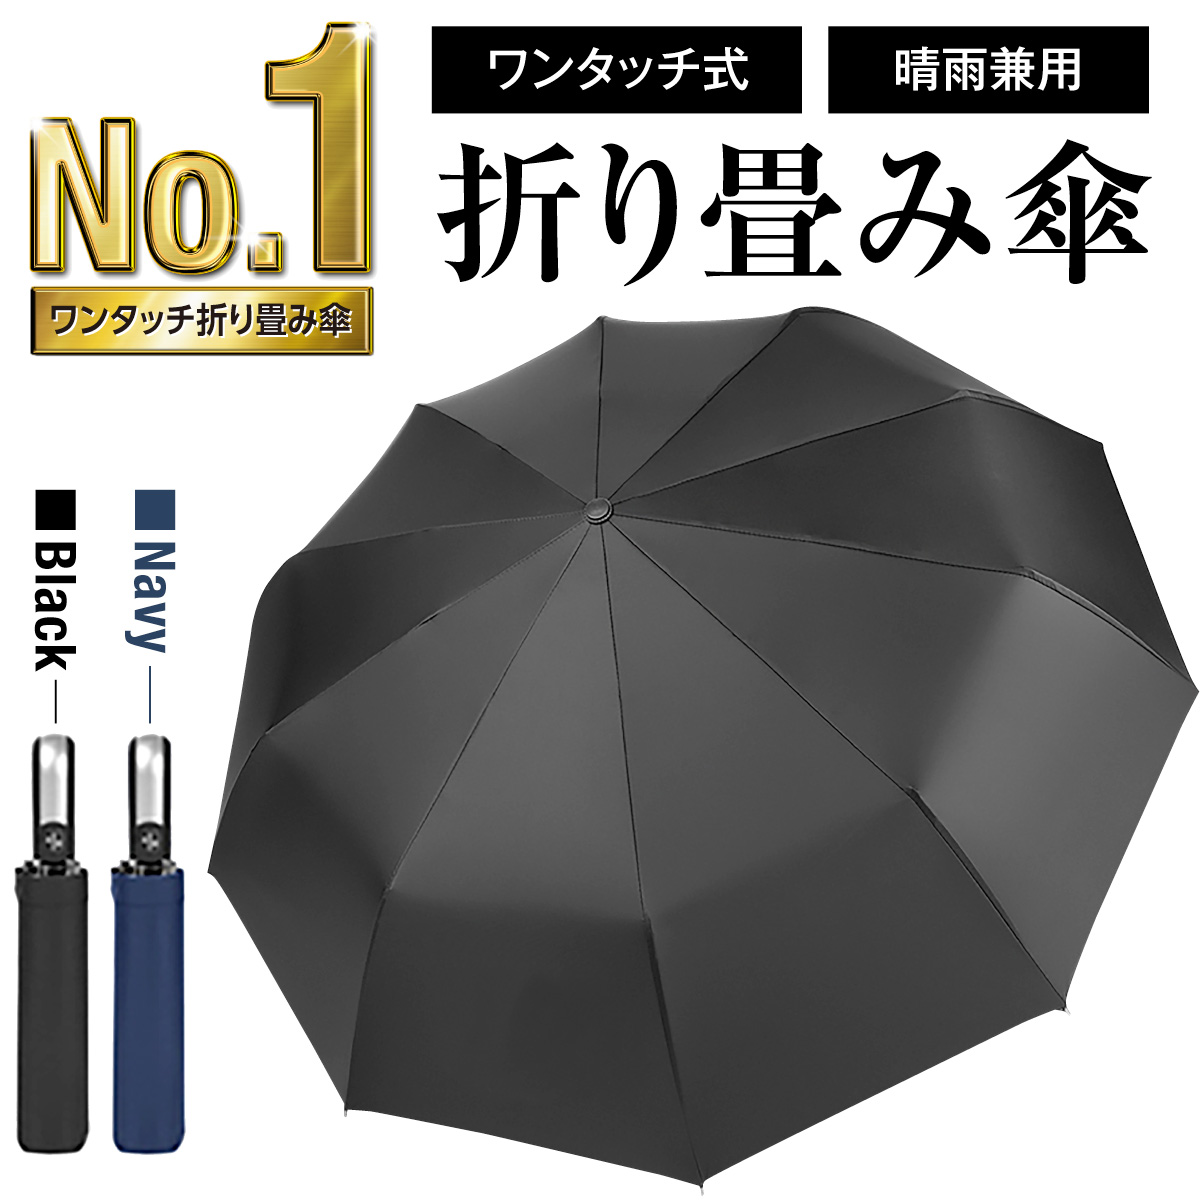 人気 おすすめ 日傘雨傘兼用 ワンタッチ開閉 折りたたみ傘 ブラック A2